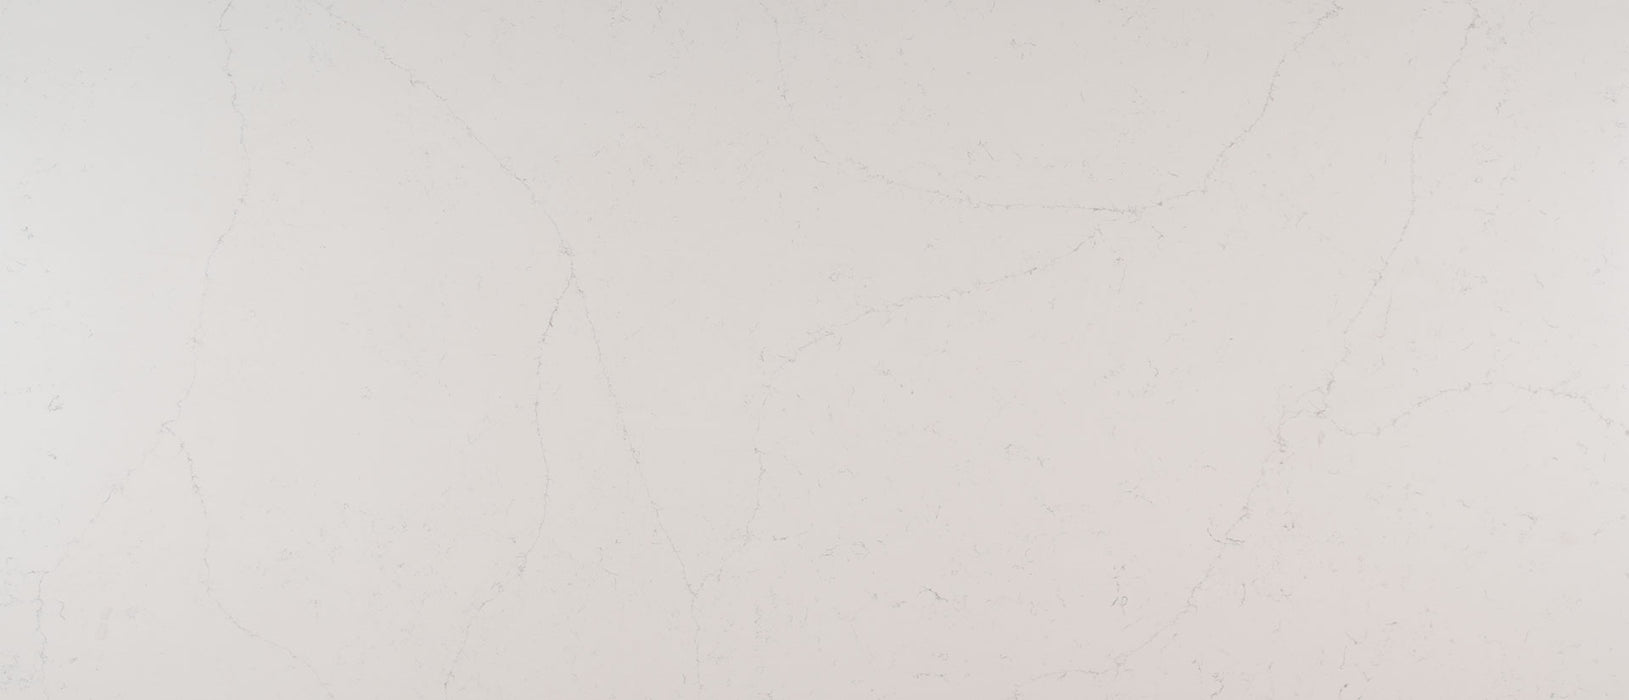 Alabaster white quartz countertop slab